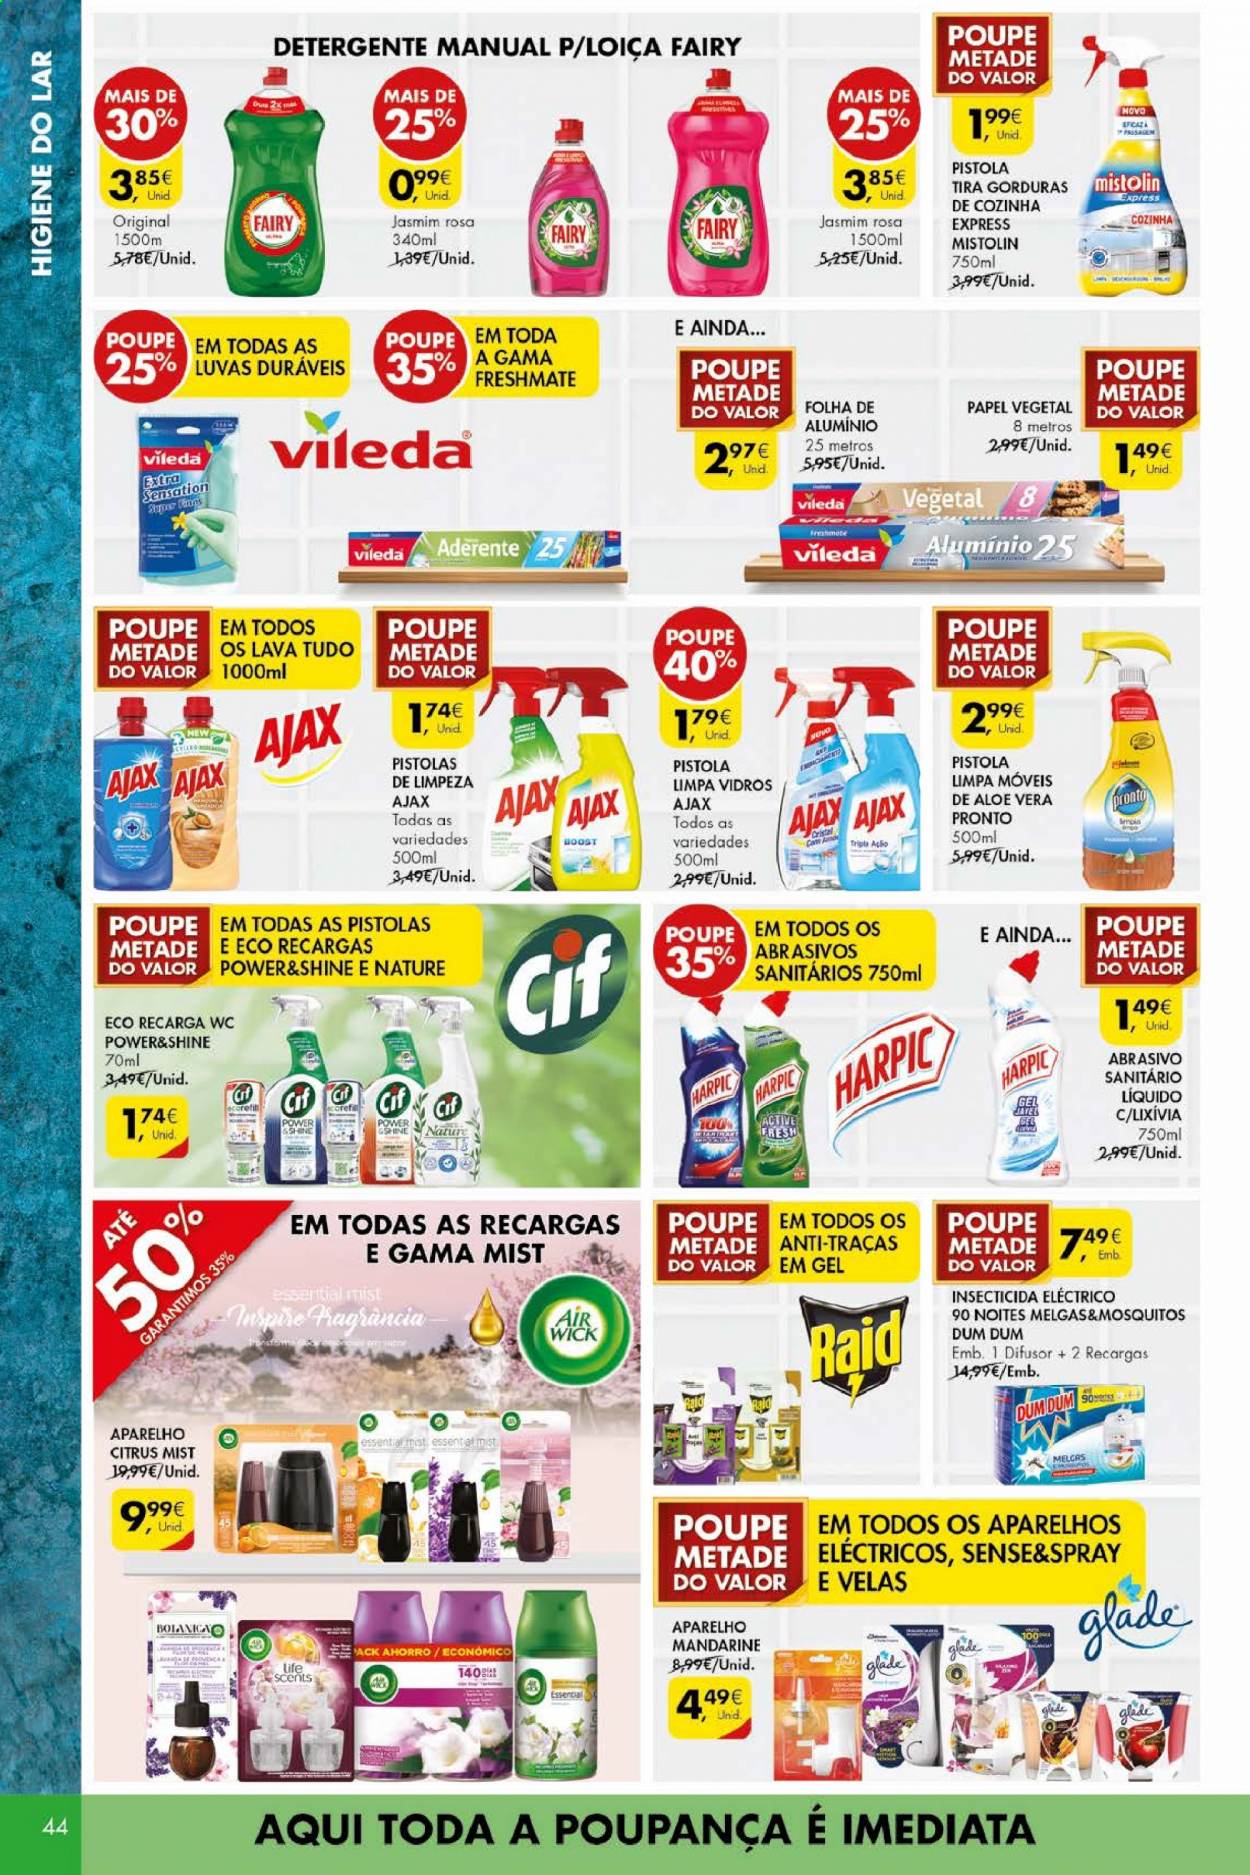 thumbnail - Folheto Pingo Doce - 18.5.2021 - 24.5.2021 - Produtos em promoção - detergente, Harpic, Vileda, limpa vidros, difusor, luvas. Página 44.